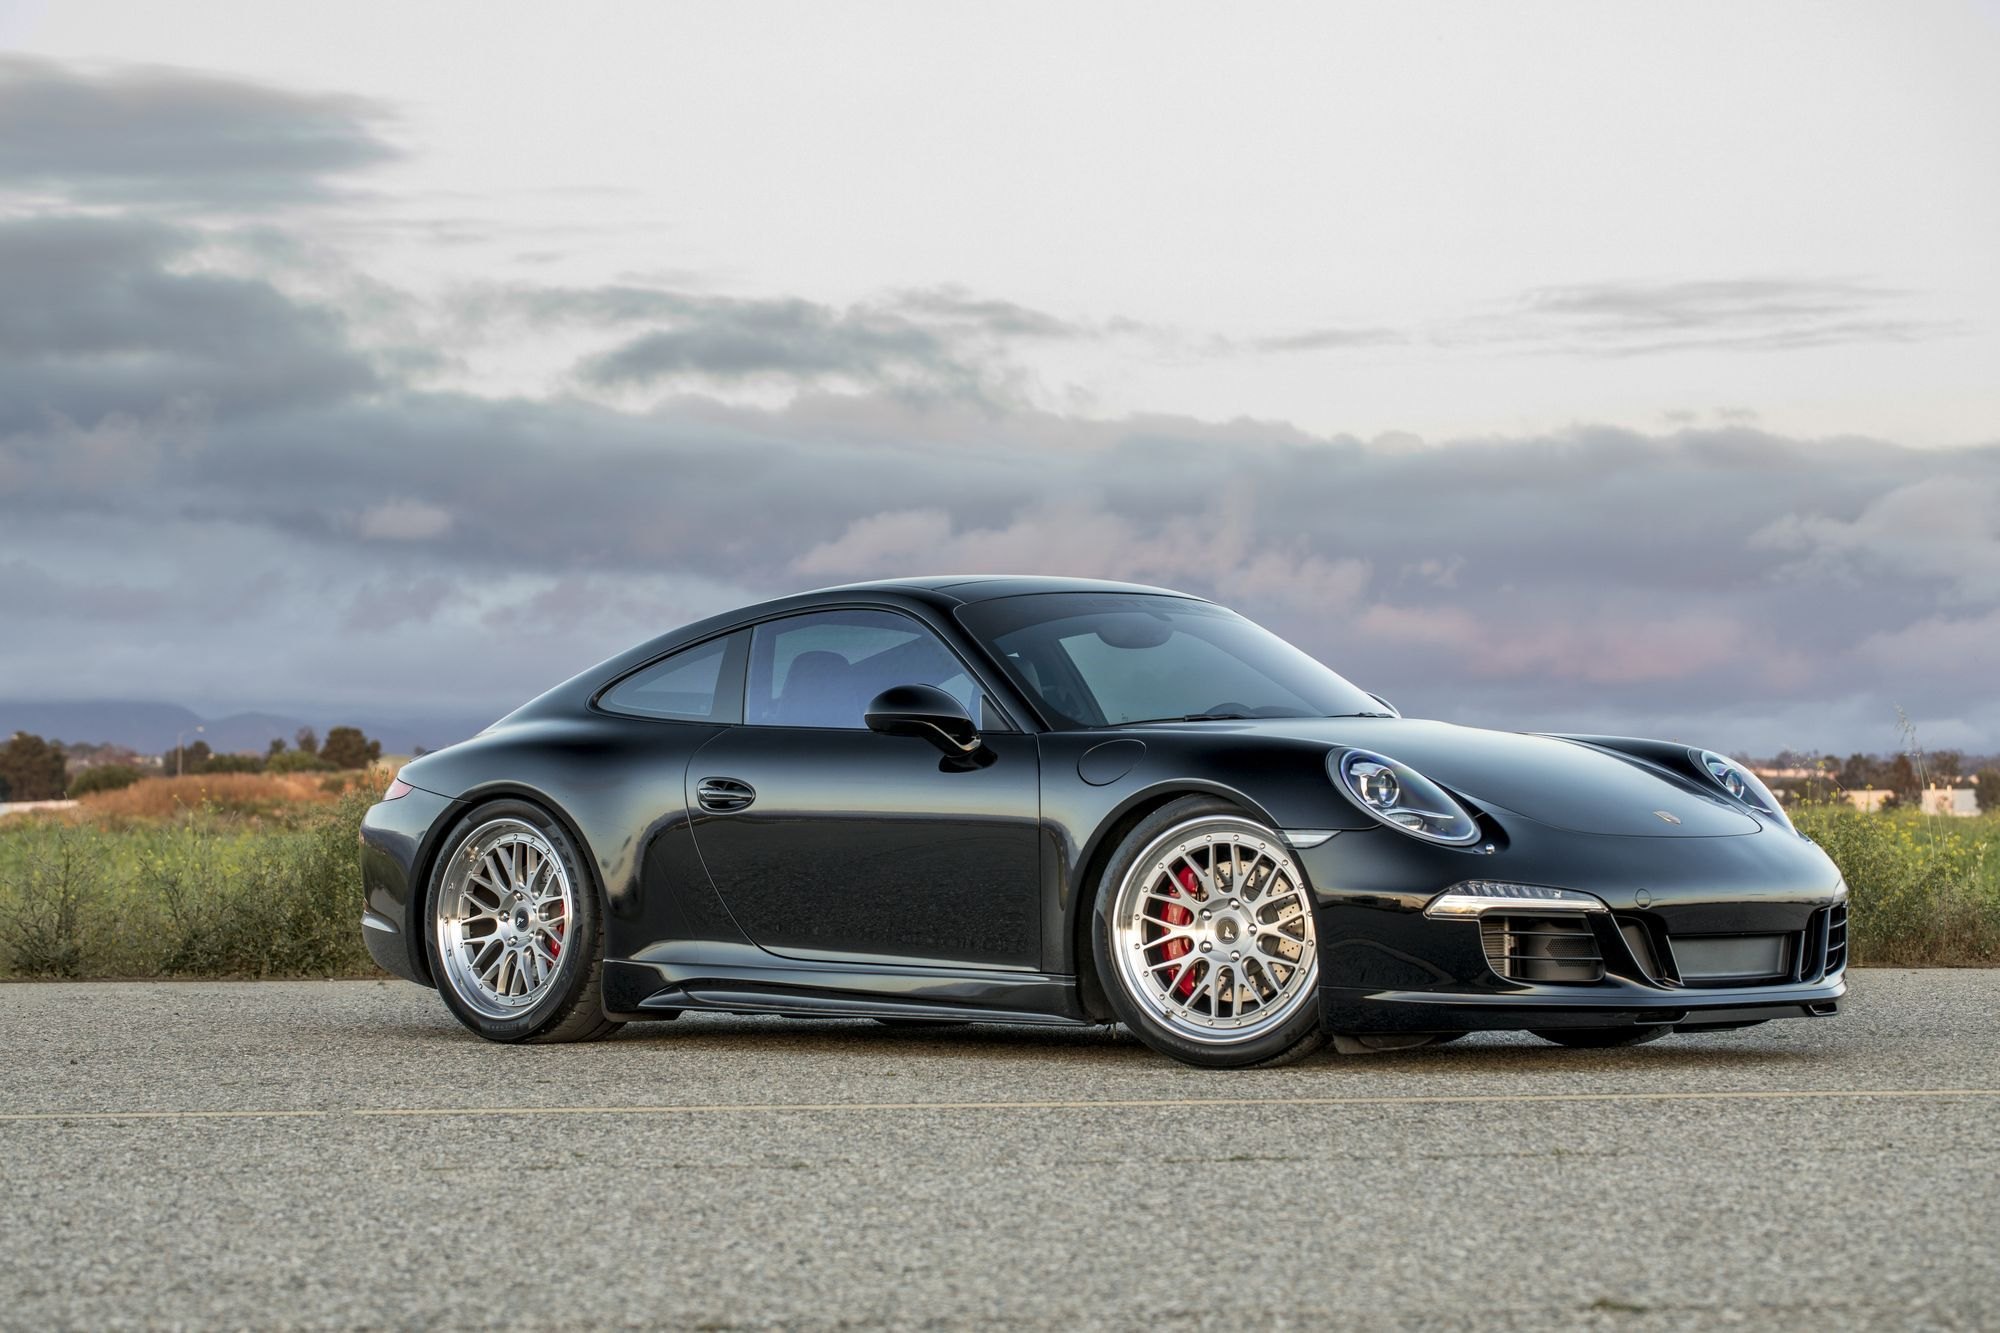 Silver Vorsteiner Wheels on Black Porsche 911 - Photo by Vorstiner